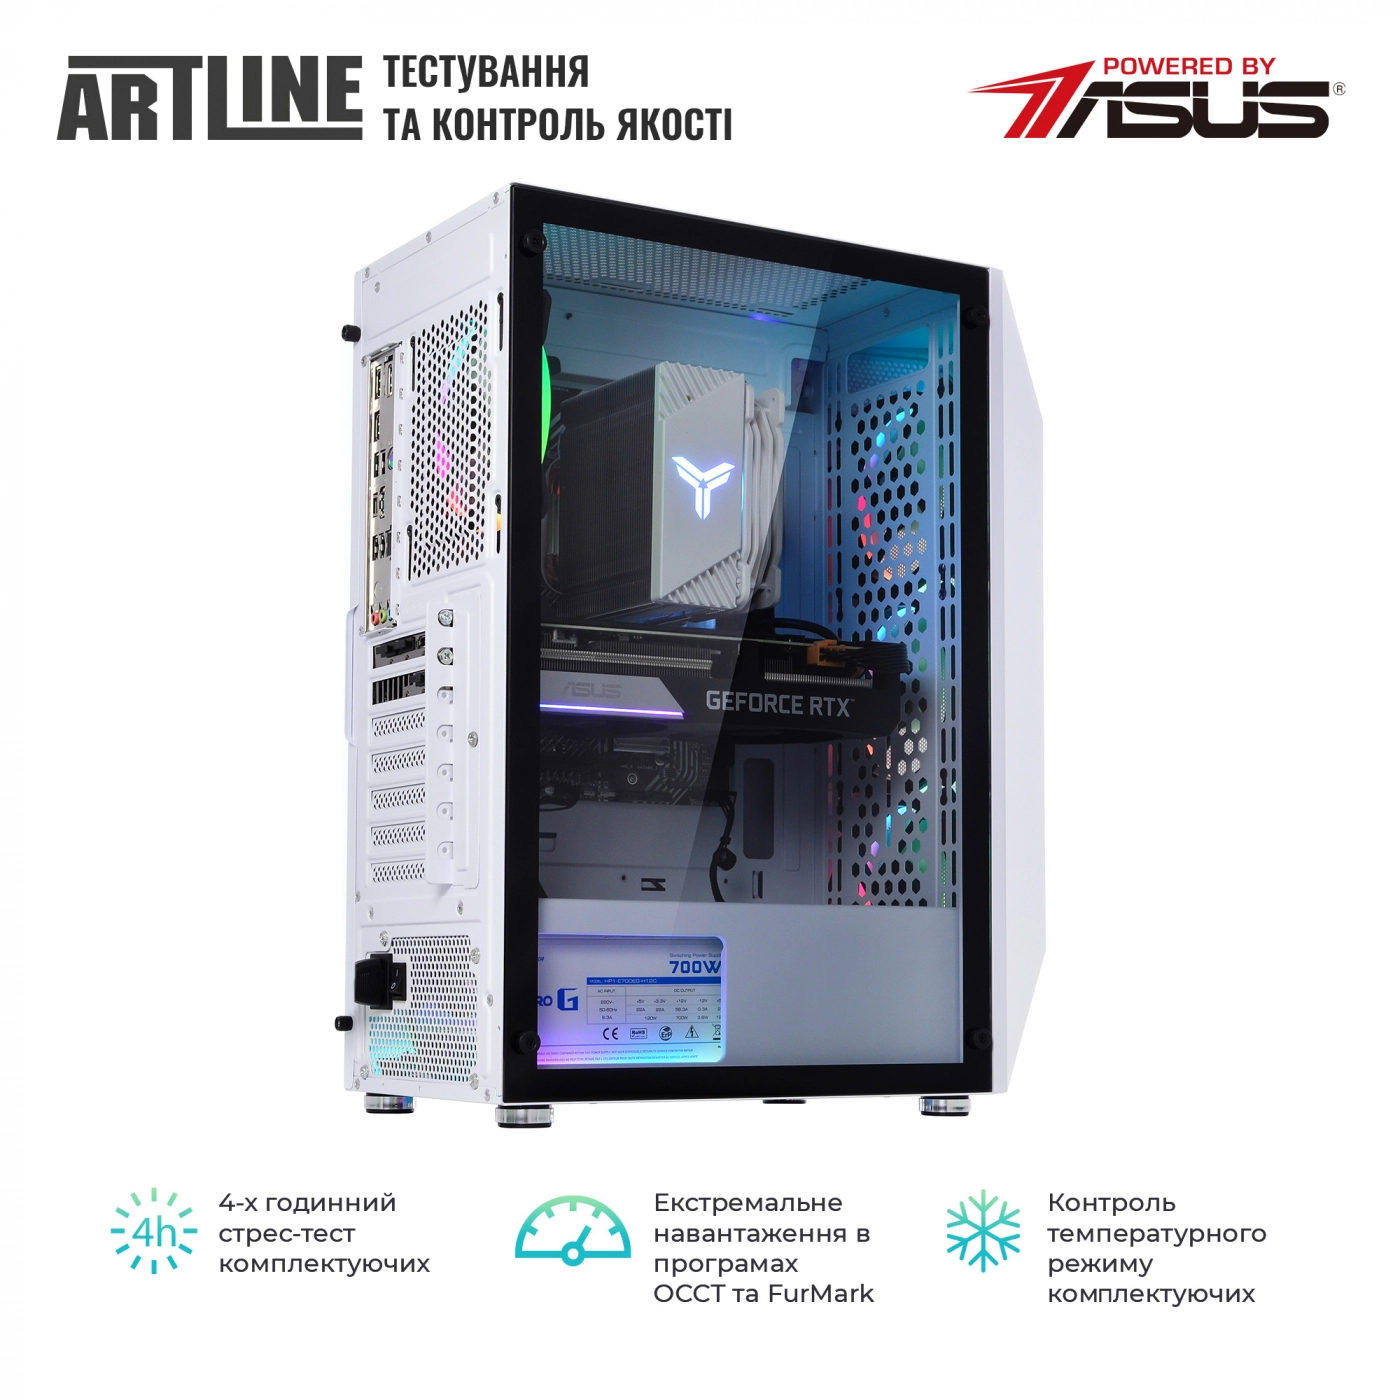 Купить Компьютер ARTLINE Gaming X75White (X75Whitev45) - фото 6